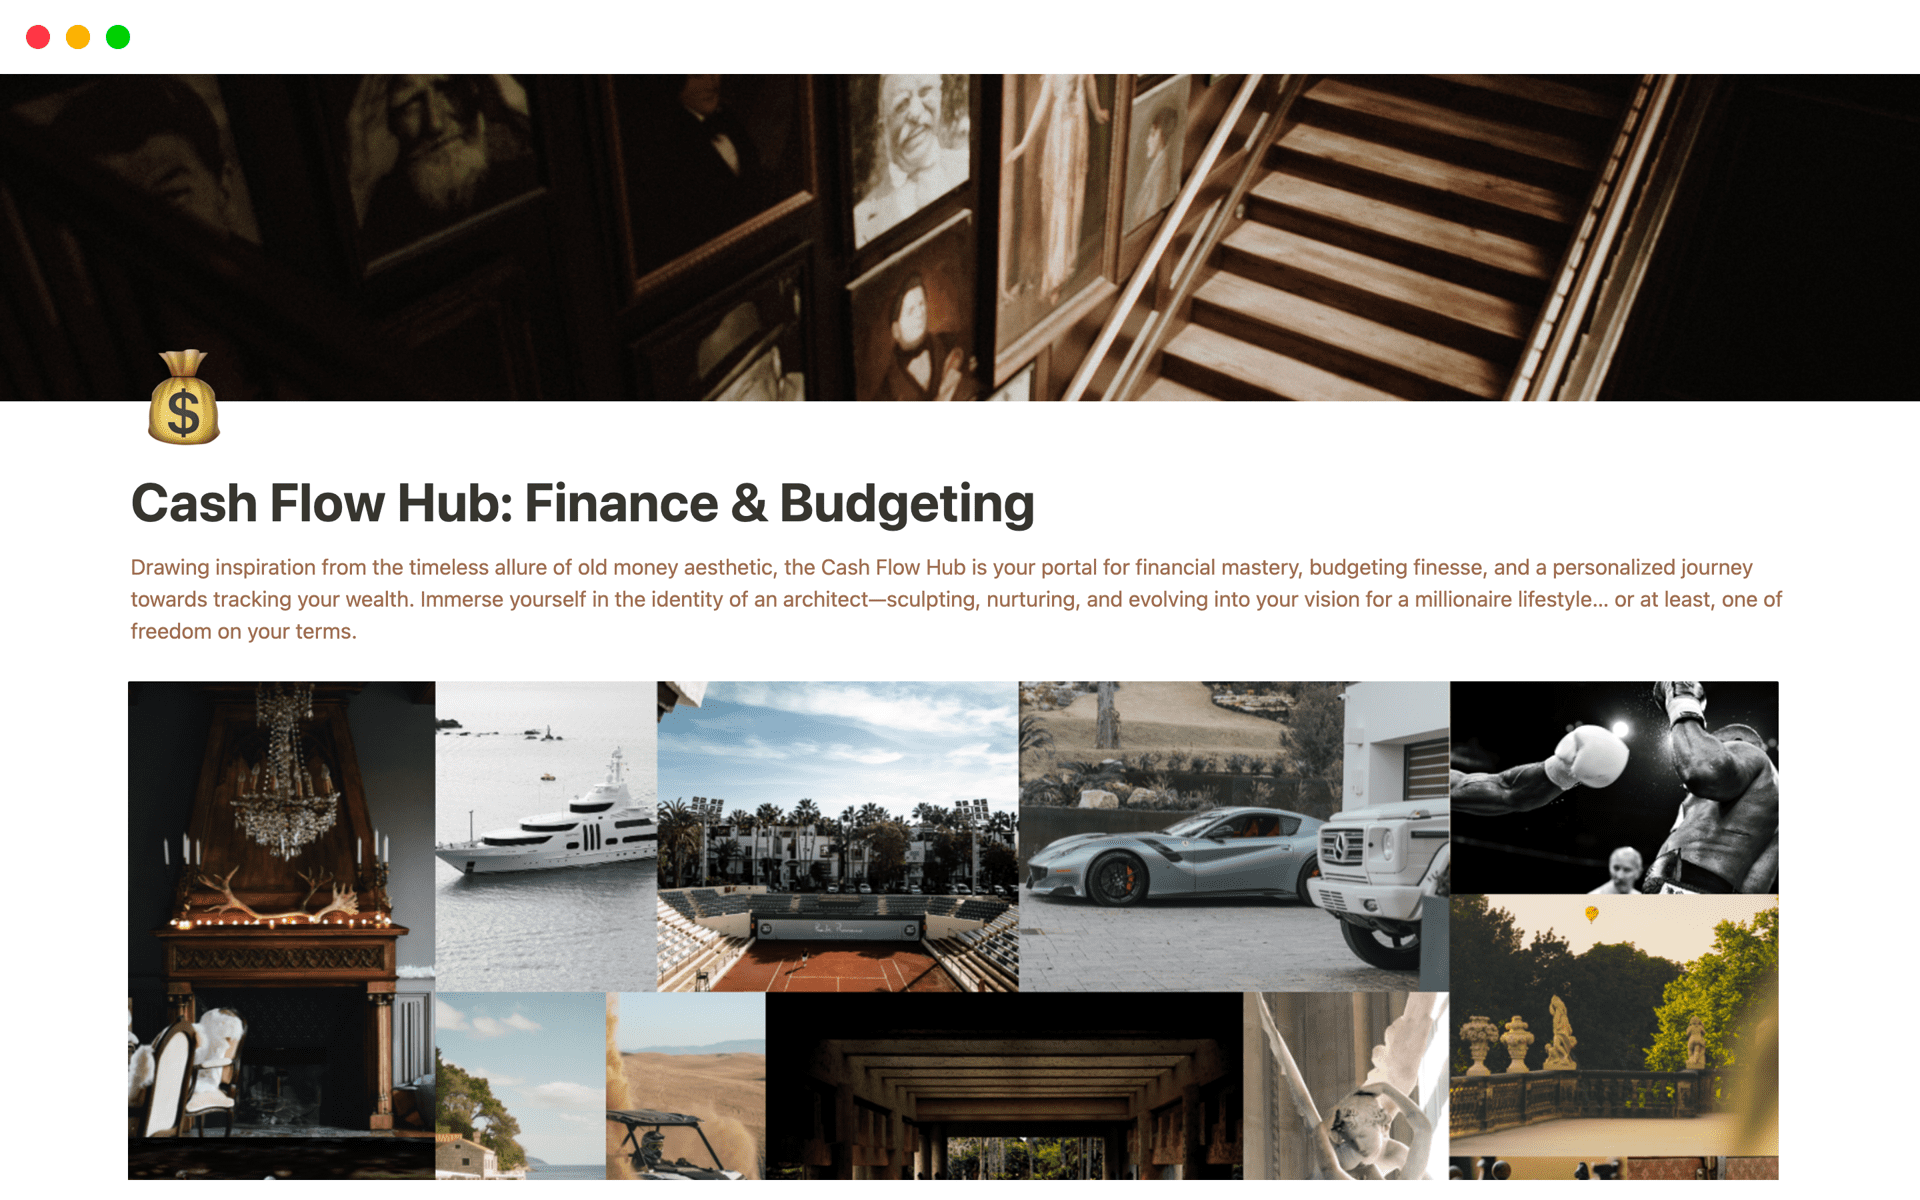 Aperçu du modèle de Cash Flow Hub: Finance & Budgeting